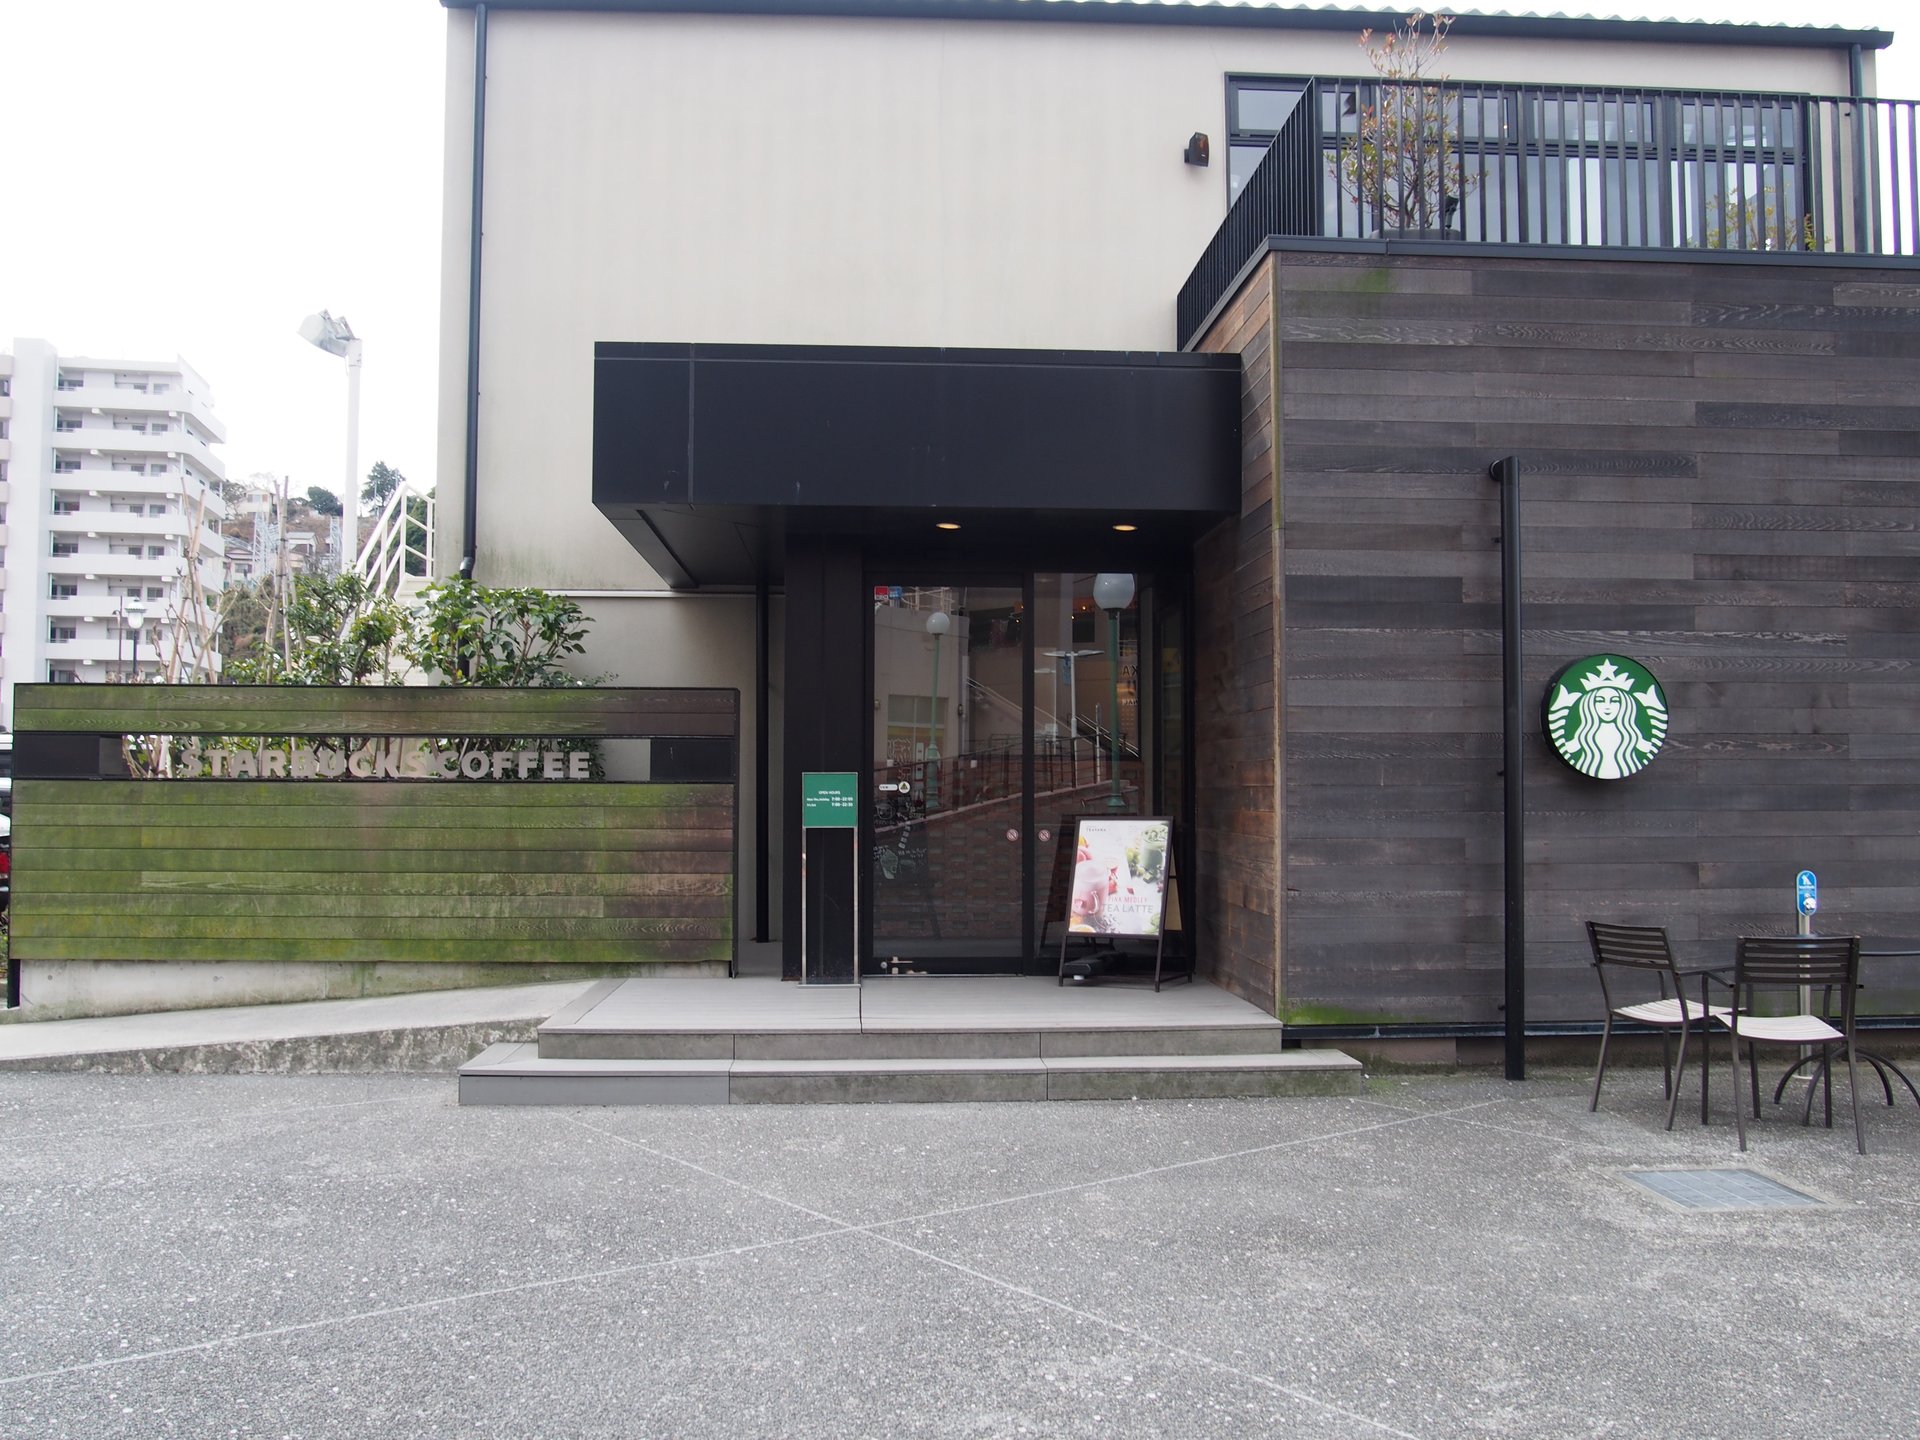 スターバックスコーヒー ショッパーズプラザ横須賀シーサイドビレッジ店